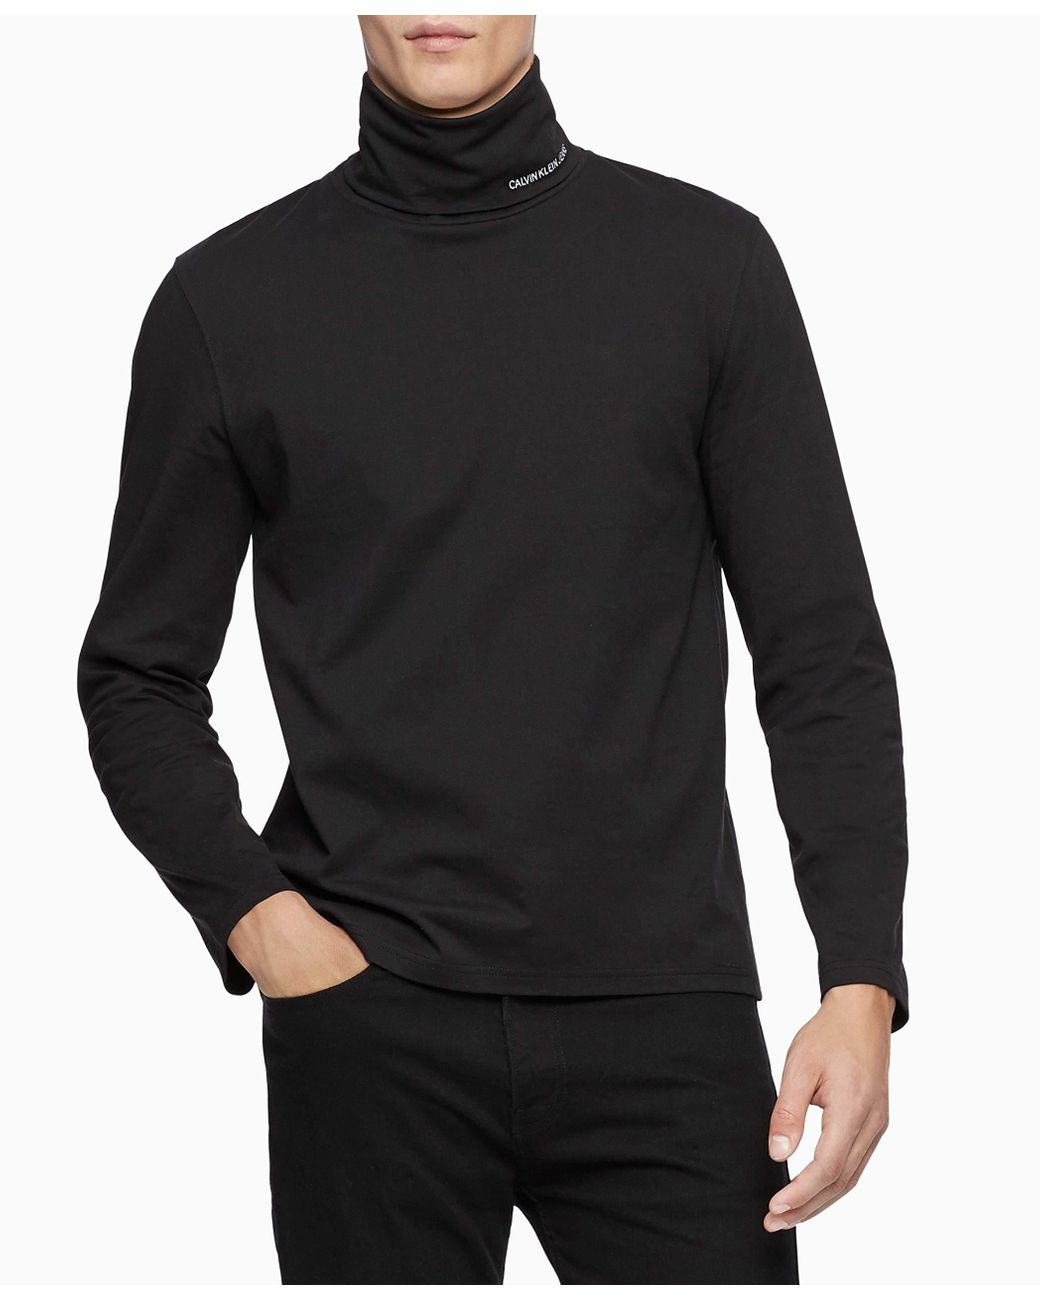 Calvin Klein Denim Logo Long Sleeve Turtleneck in Black for Men - Lyst